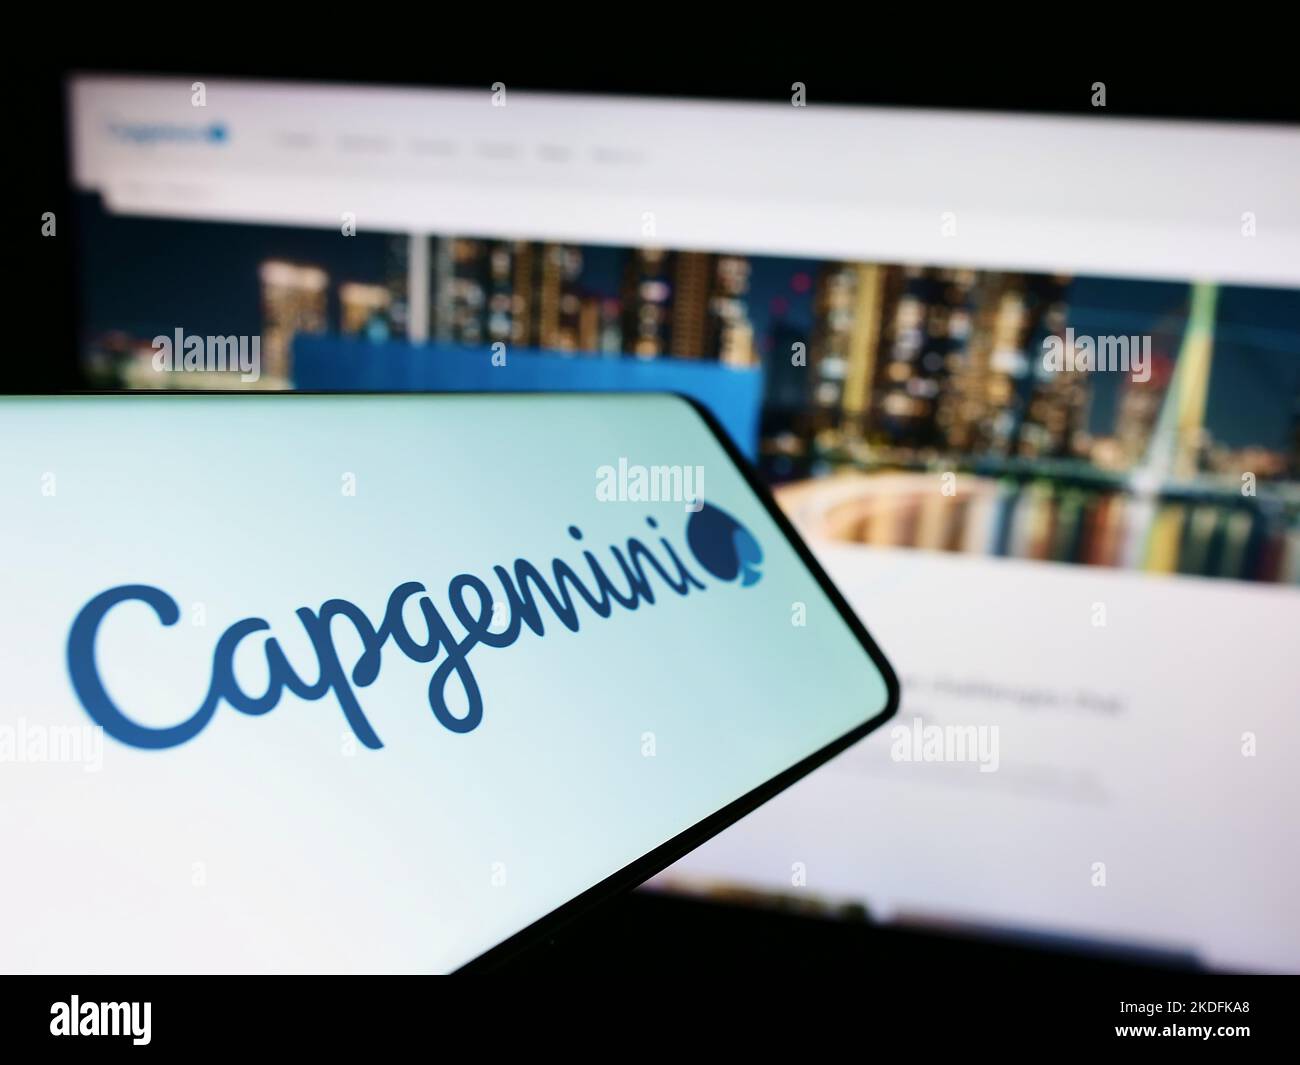 Cellulare con logo della società di informatica Capgemini se sullo schermo di fronte al sito web aziendale. Messa a fuoco al centro a sinistra del display del telefono. Foto Stock